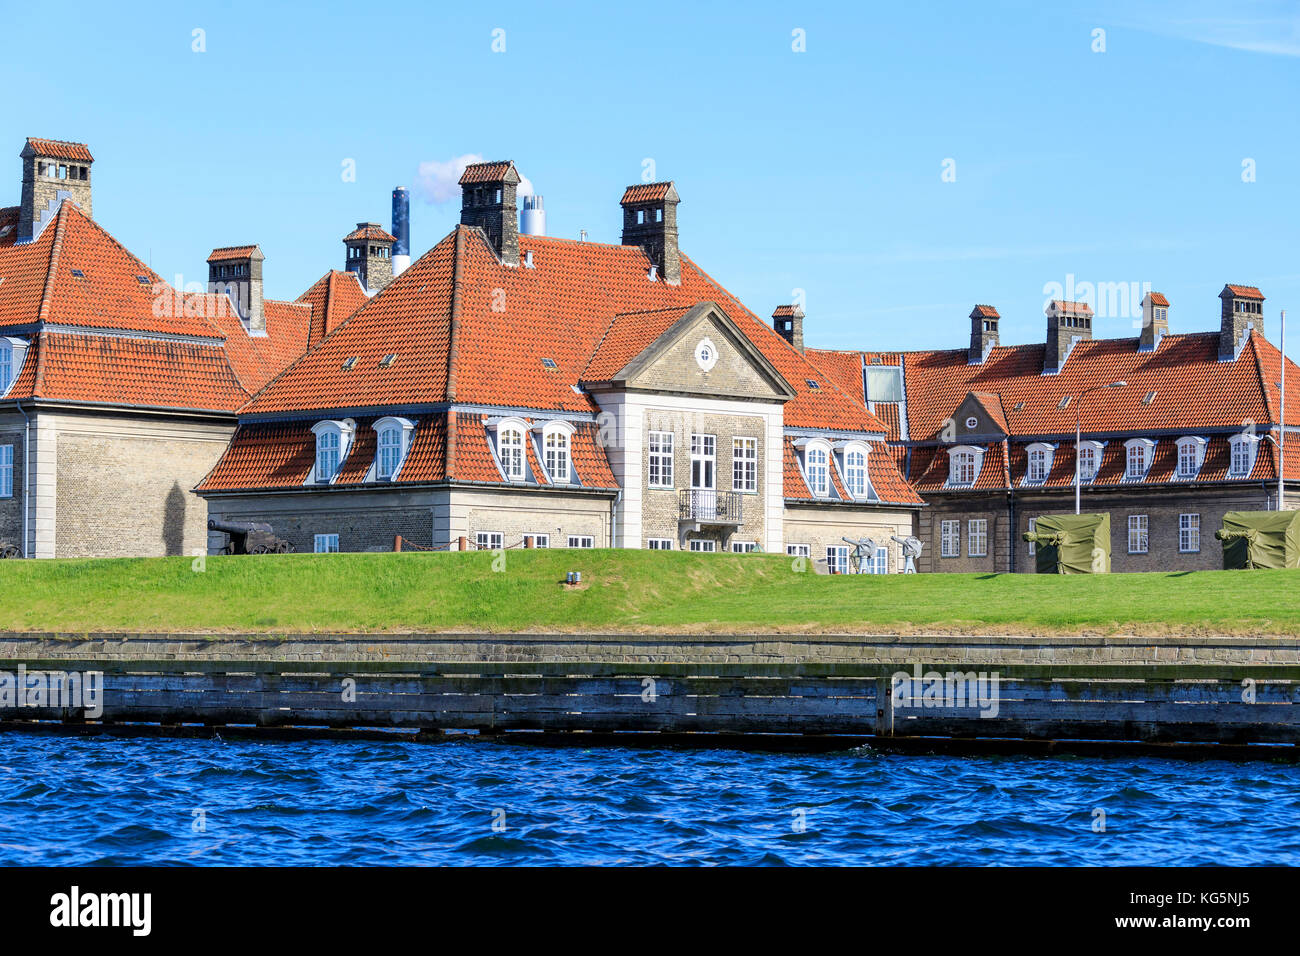 Typische Häuser der Wohngegend von einer Bootsfahrt auf den Kanälen von Kopenhagen, Dänemark Stockfoto